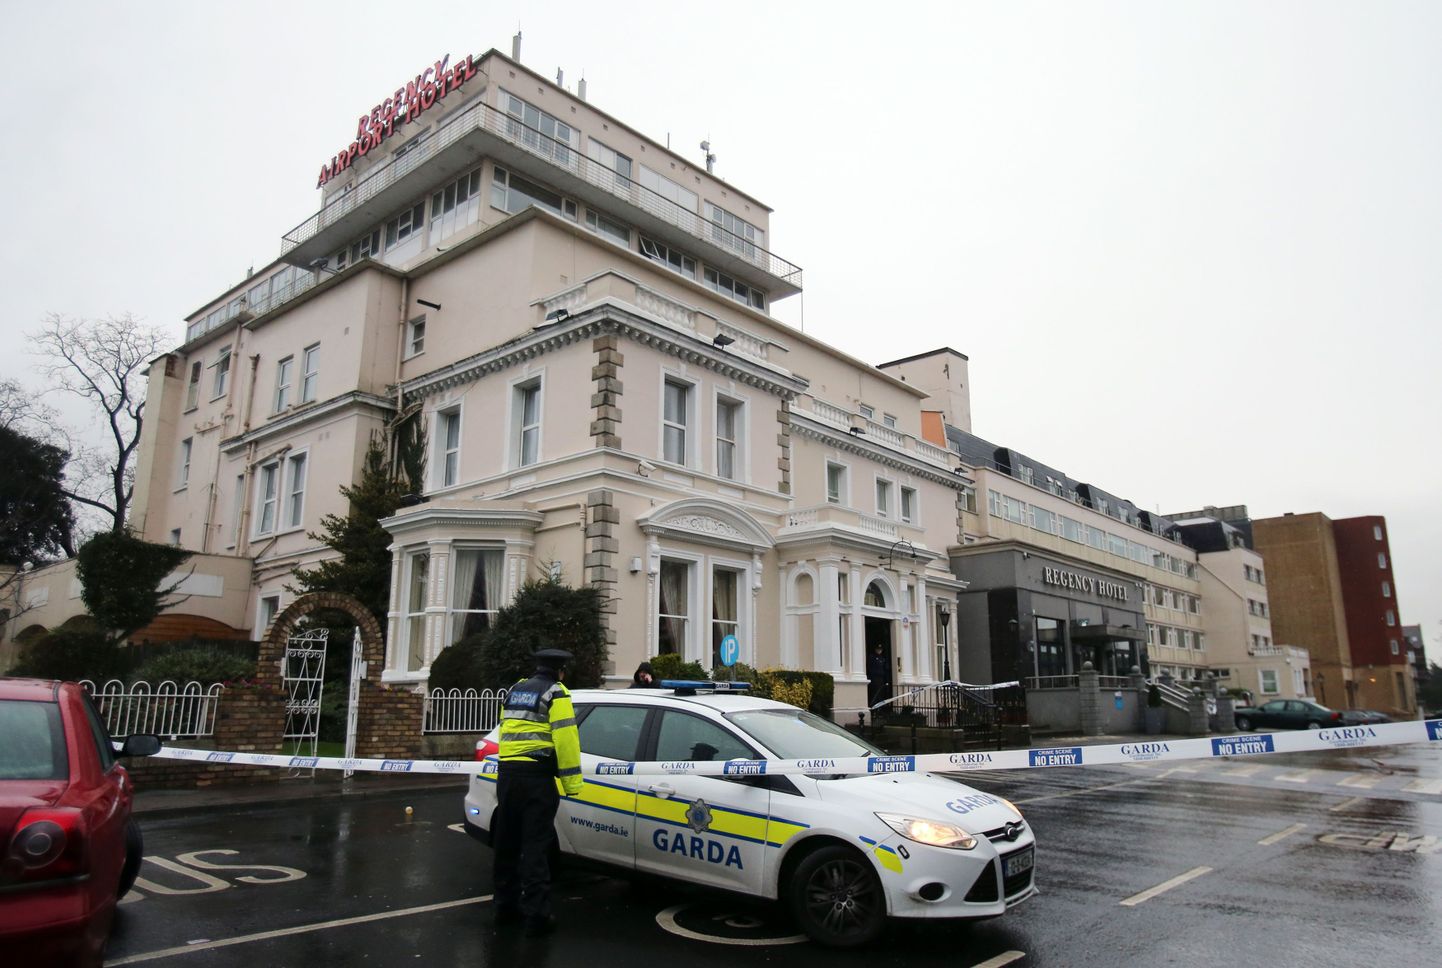 Dublinis Regency hotellis toimunud tulistamine nõudis vähemalt ühe inimelu.